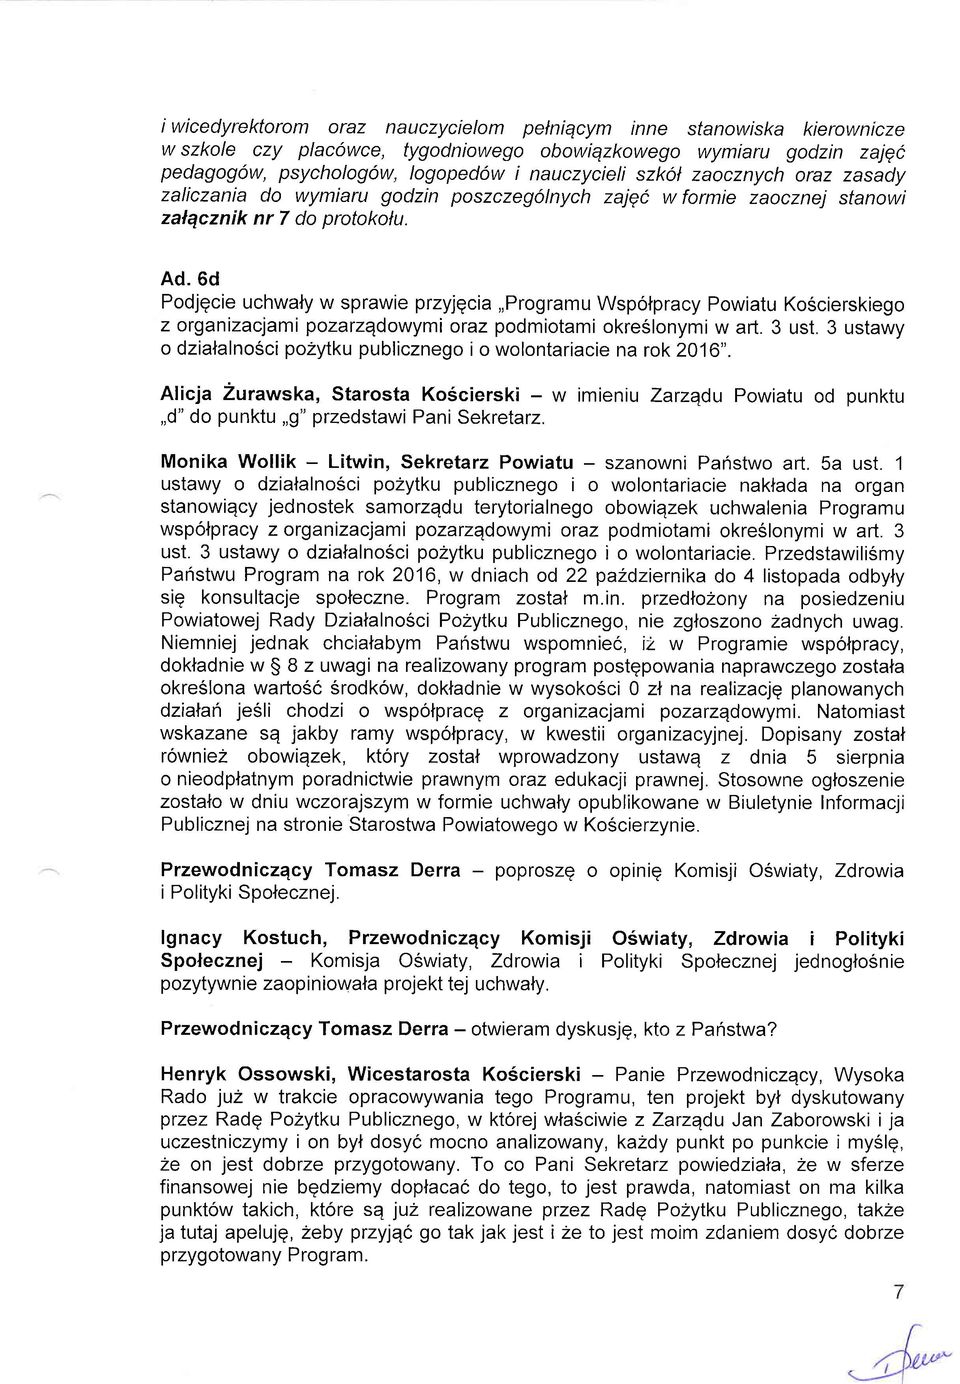 6d Podjqcie uchwaly w sprawie przyjgcia,,programu Wspolpracy Powiatu KoScierskiego z organizacjami pozarzqdowymi oraz podmiotami okreslonymi w a11. 3 ust.